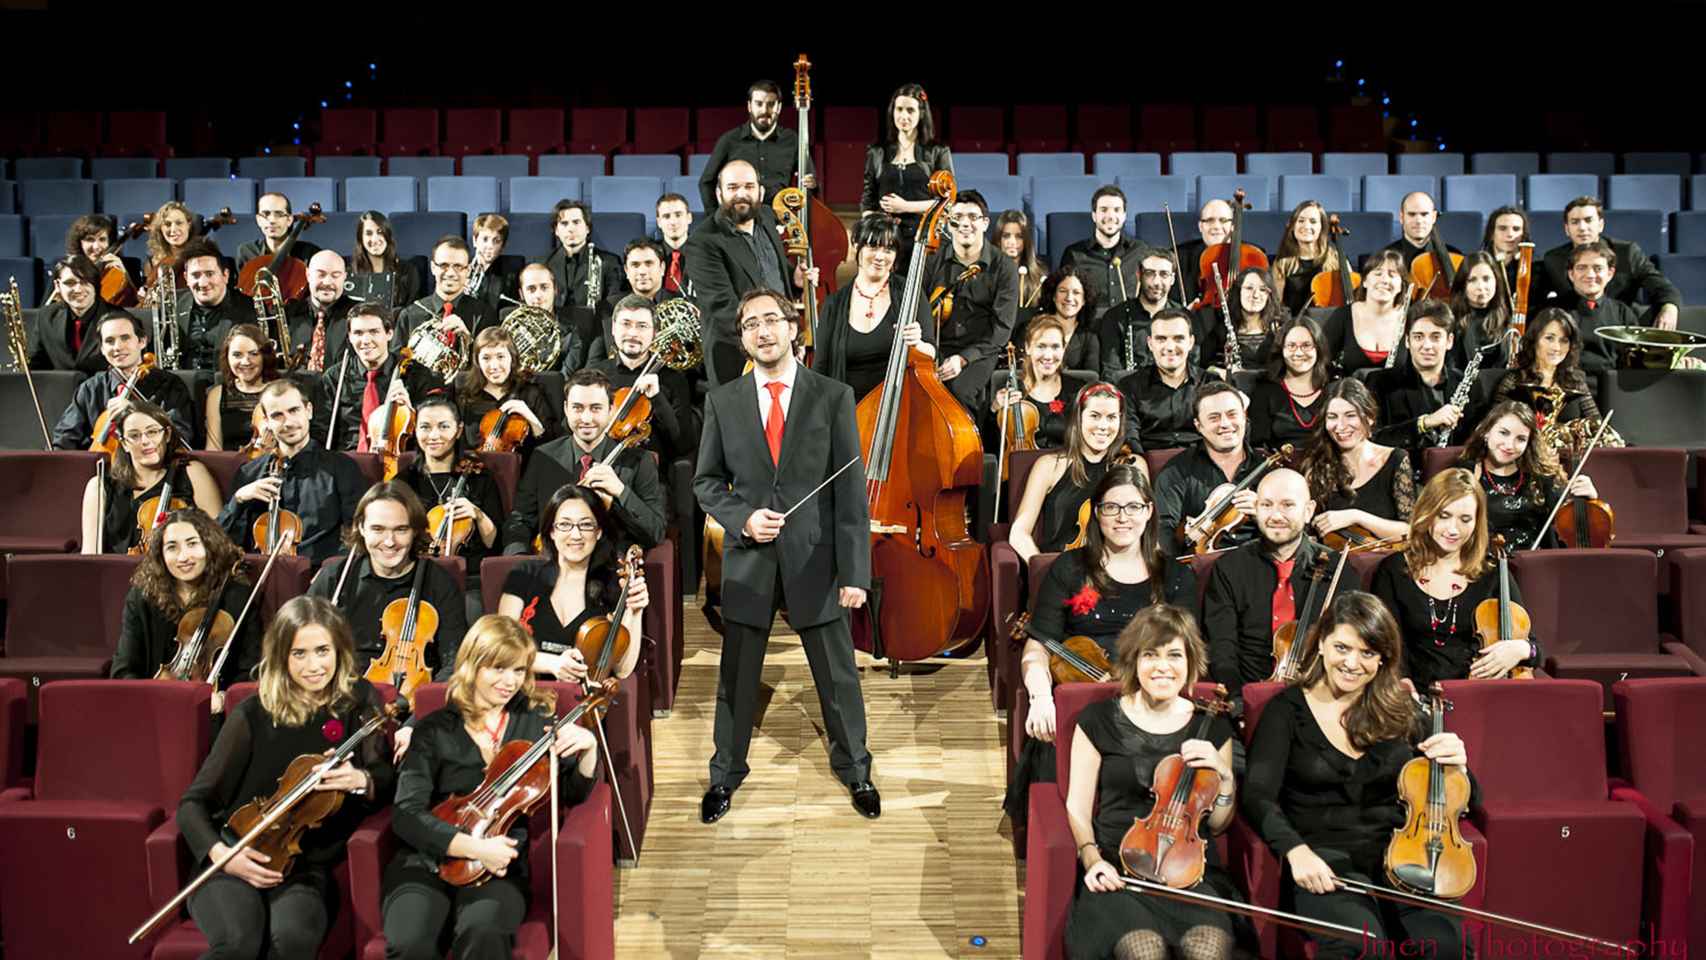 Camerata Musicalis, una de las orquestas que renuevan la música clásica.